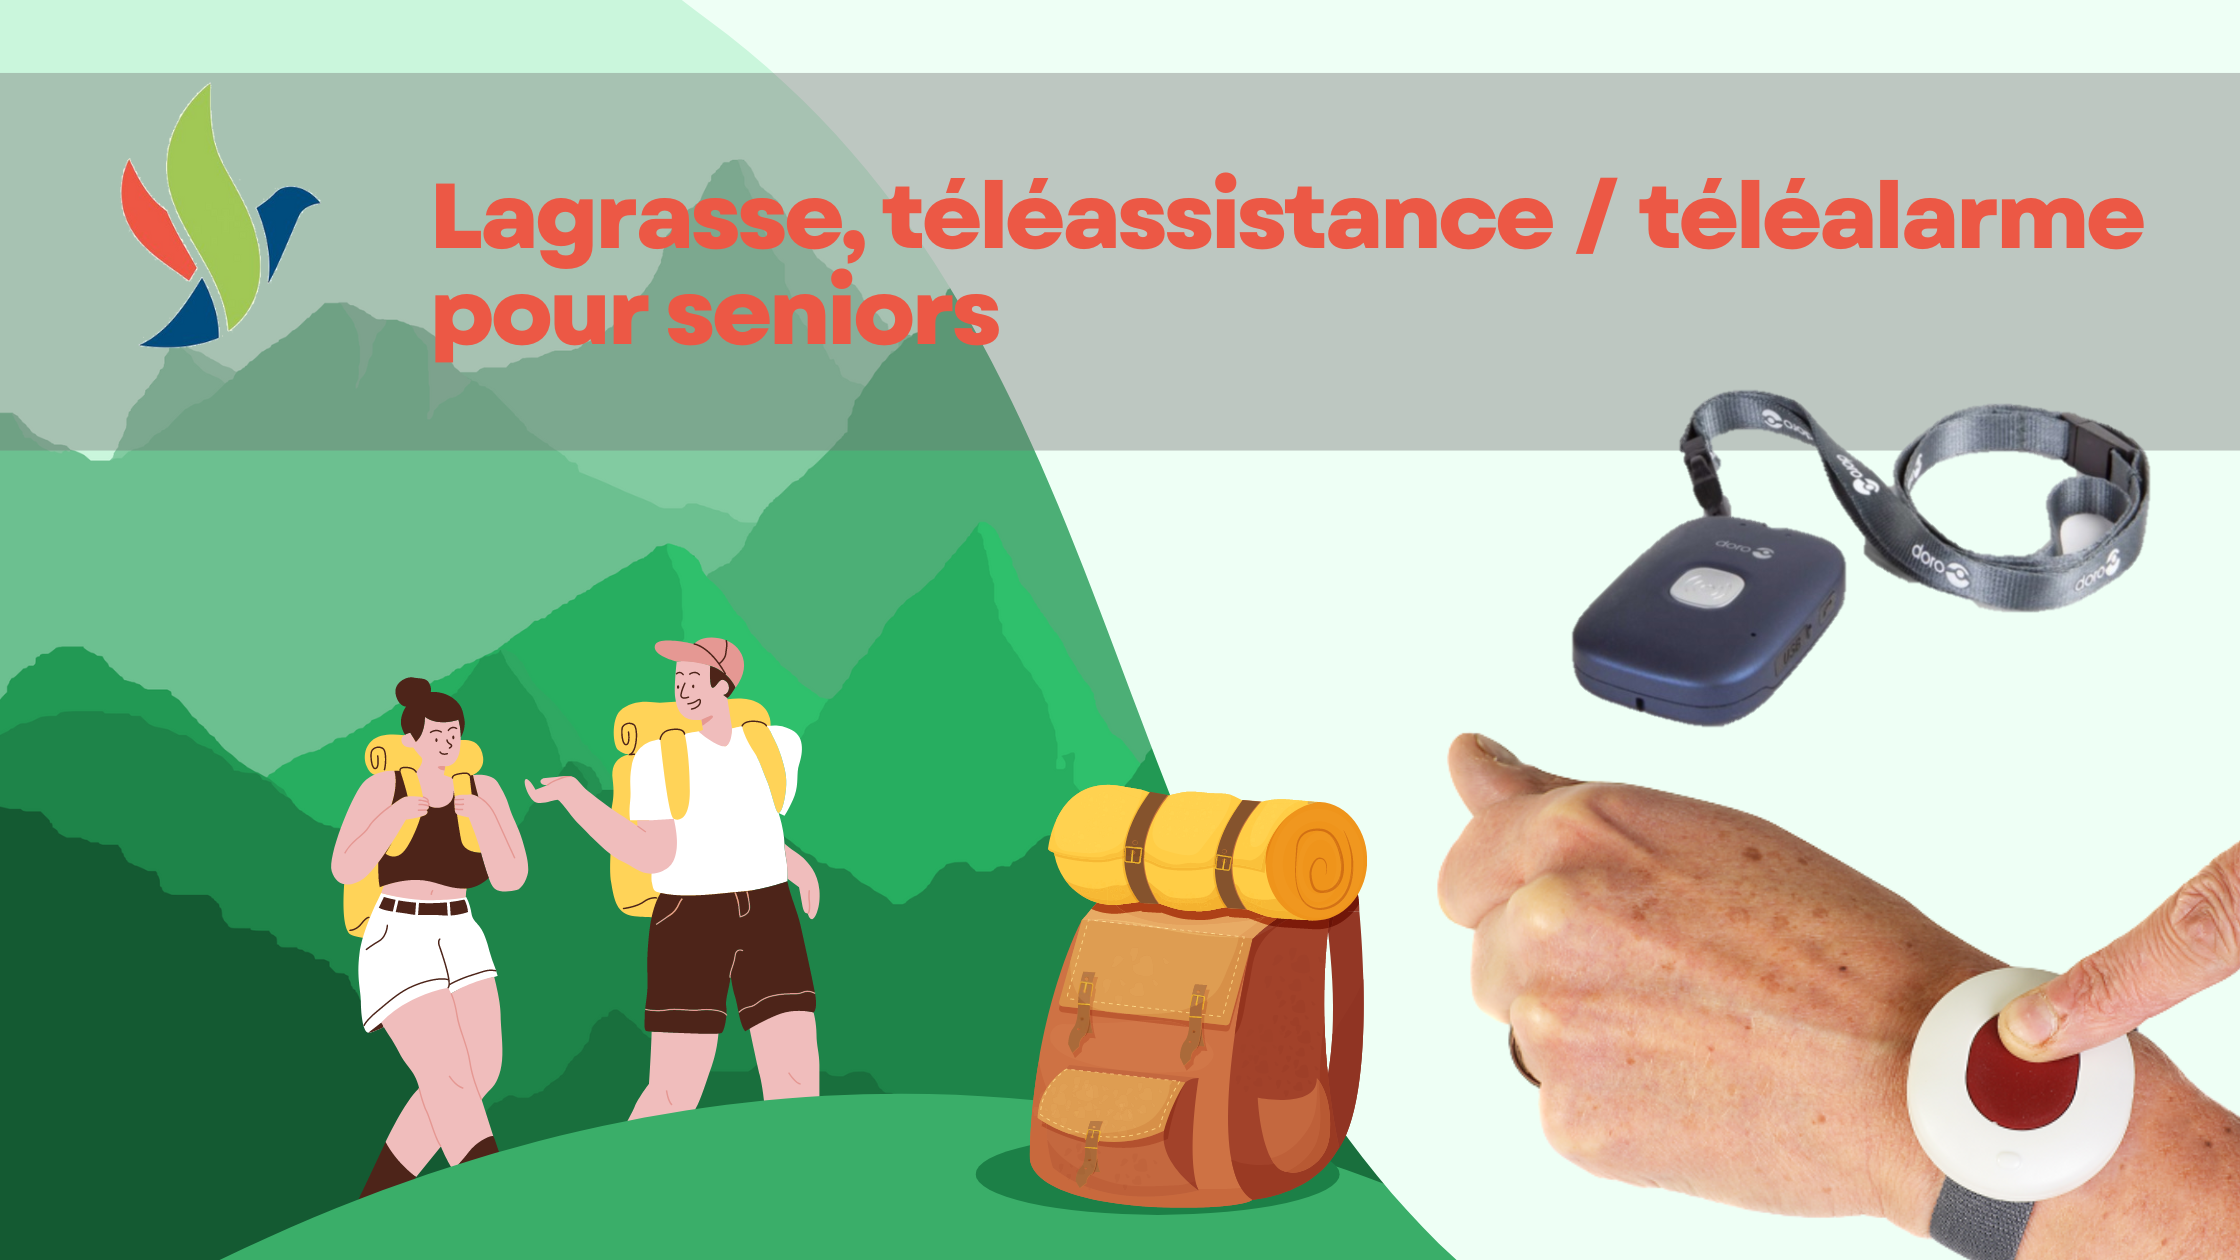 Lagrasse téléalarme, téléassistance seniors (1)